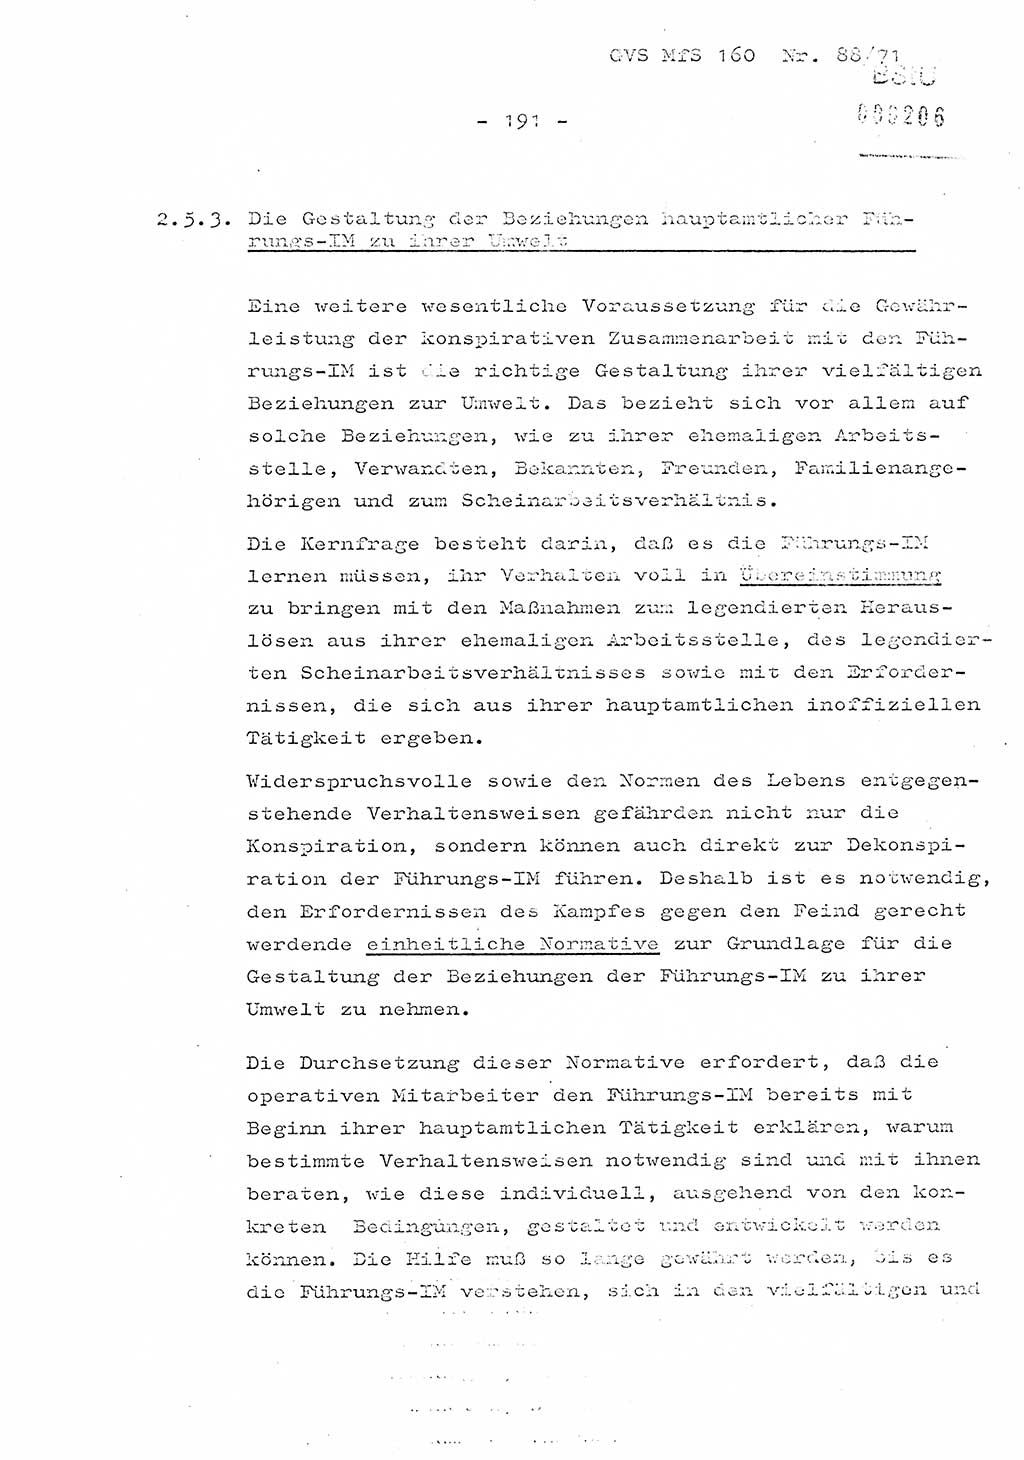 Dissertation Oberstleutnant Josef Schwarz (BV Schwerin), Major Fritz Amm (JHS), Hauptmann Peter Gräßler (JHS), Ministerium für Staatssicherheit (MfS) [Deutsche Demokratische Republik (DDR)], Juristische Hochschule (JHS), Geheime Verschlußsache (GVS) 160-88/71, Potsdam 1972, Seite 191 (Diss. MfS DDR JHS GVS 160-88/71 1972, S. 191)